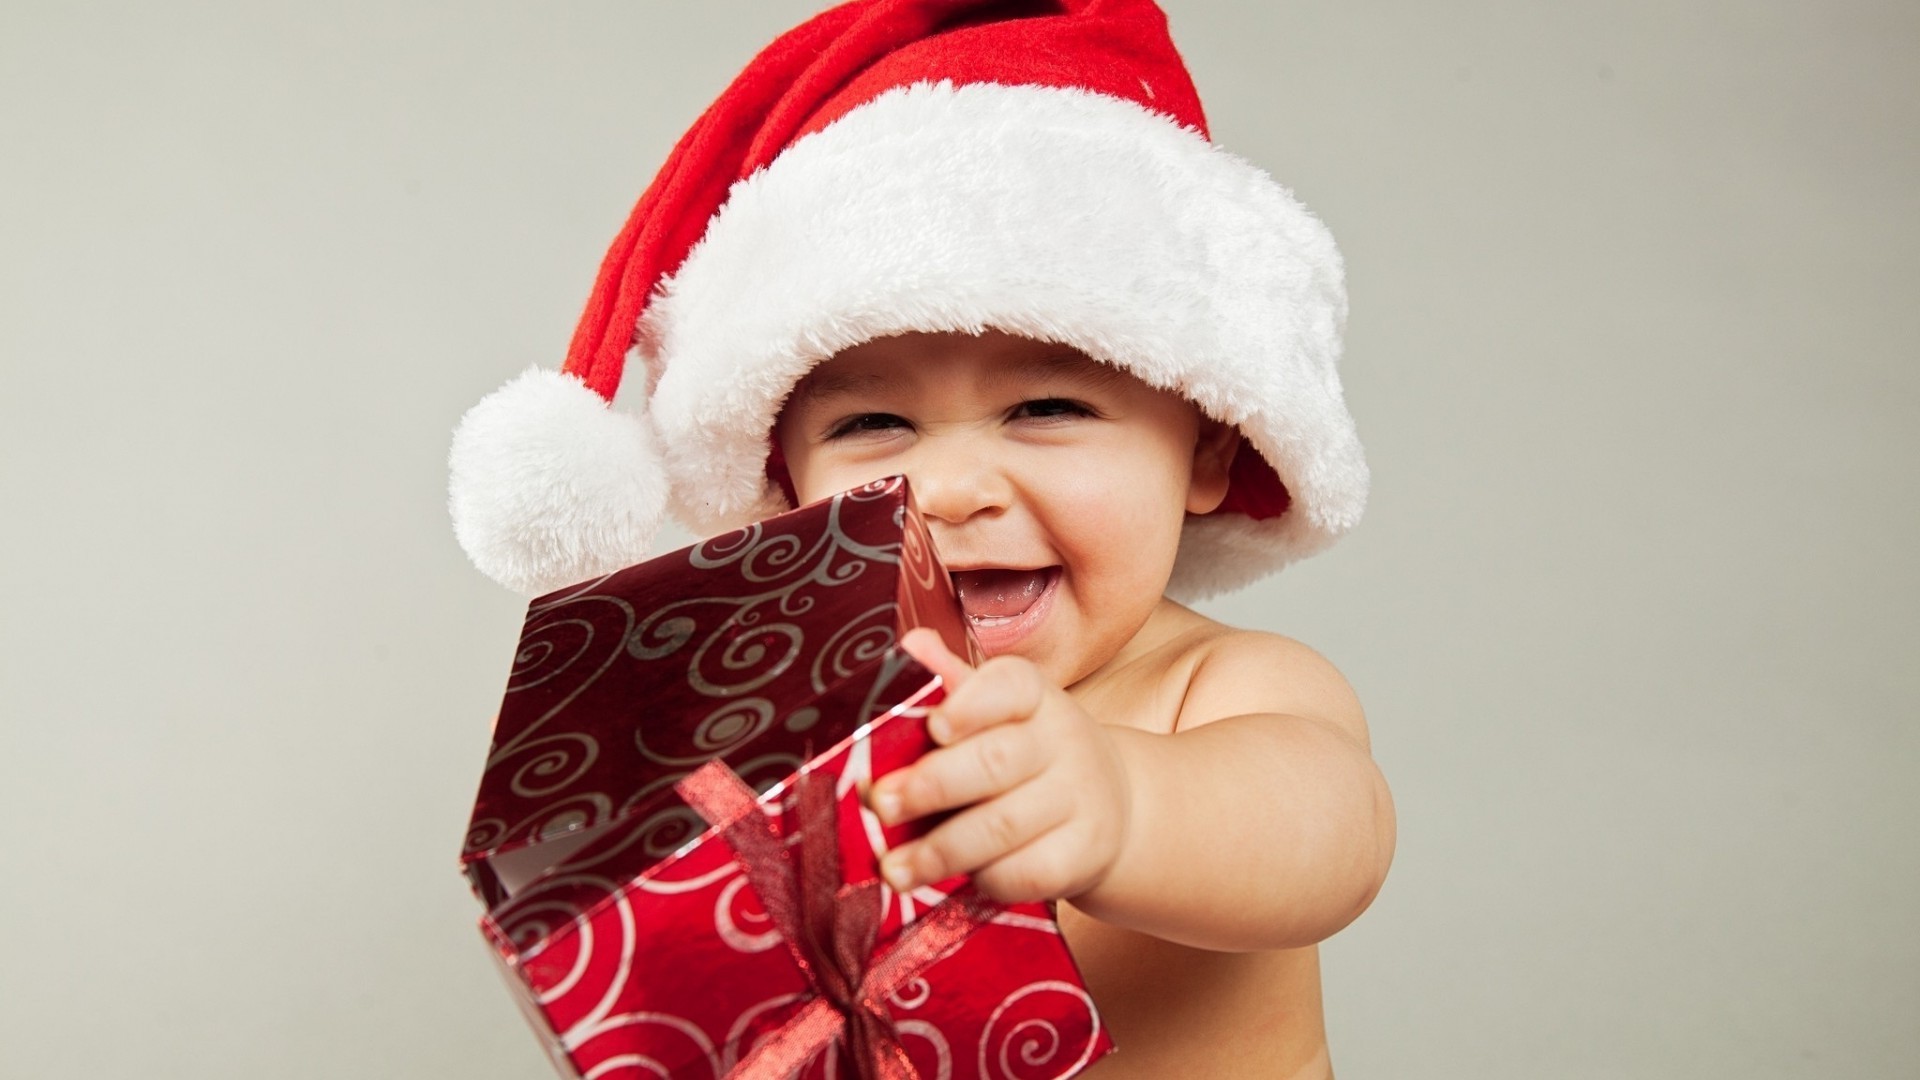 смеющиеся дети ребенок рождество зима милые мало крышка удовольствие сюрприз радость невинность драгоценные один смешно